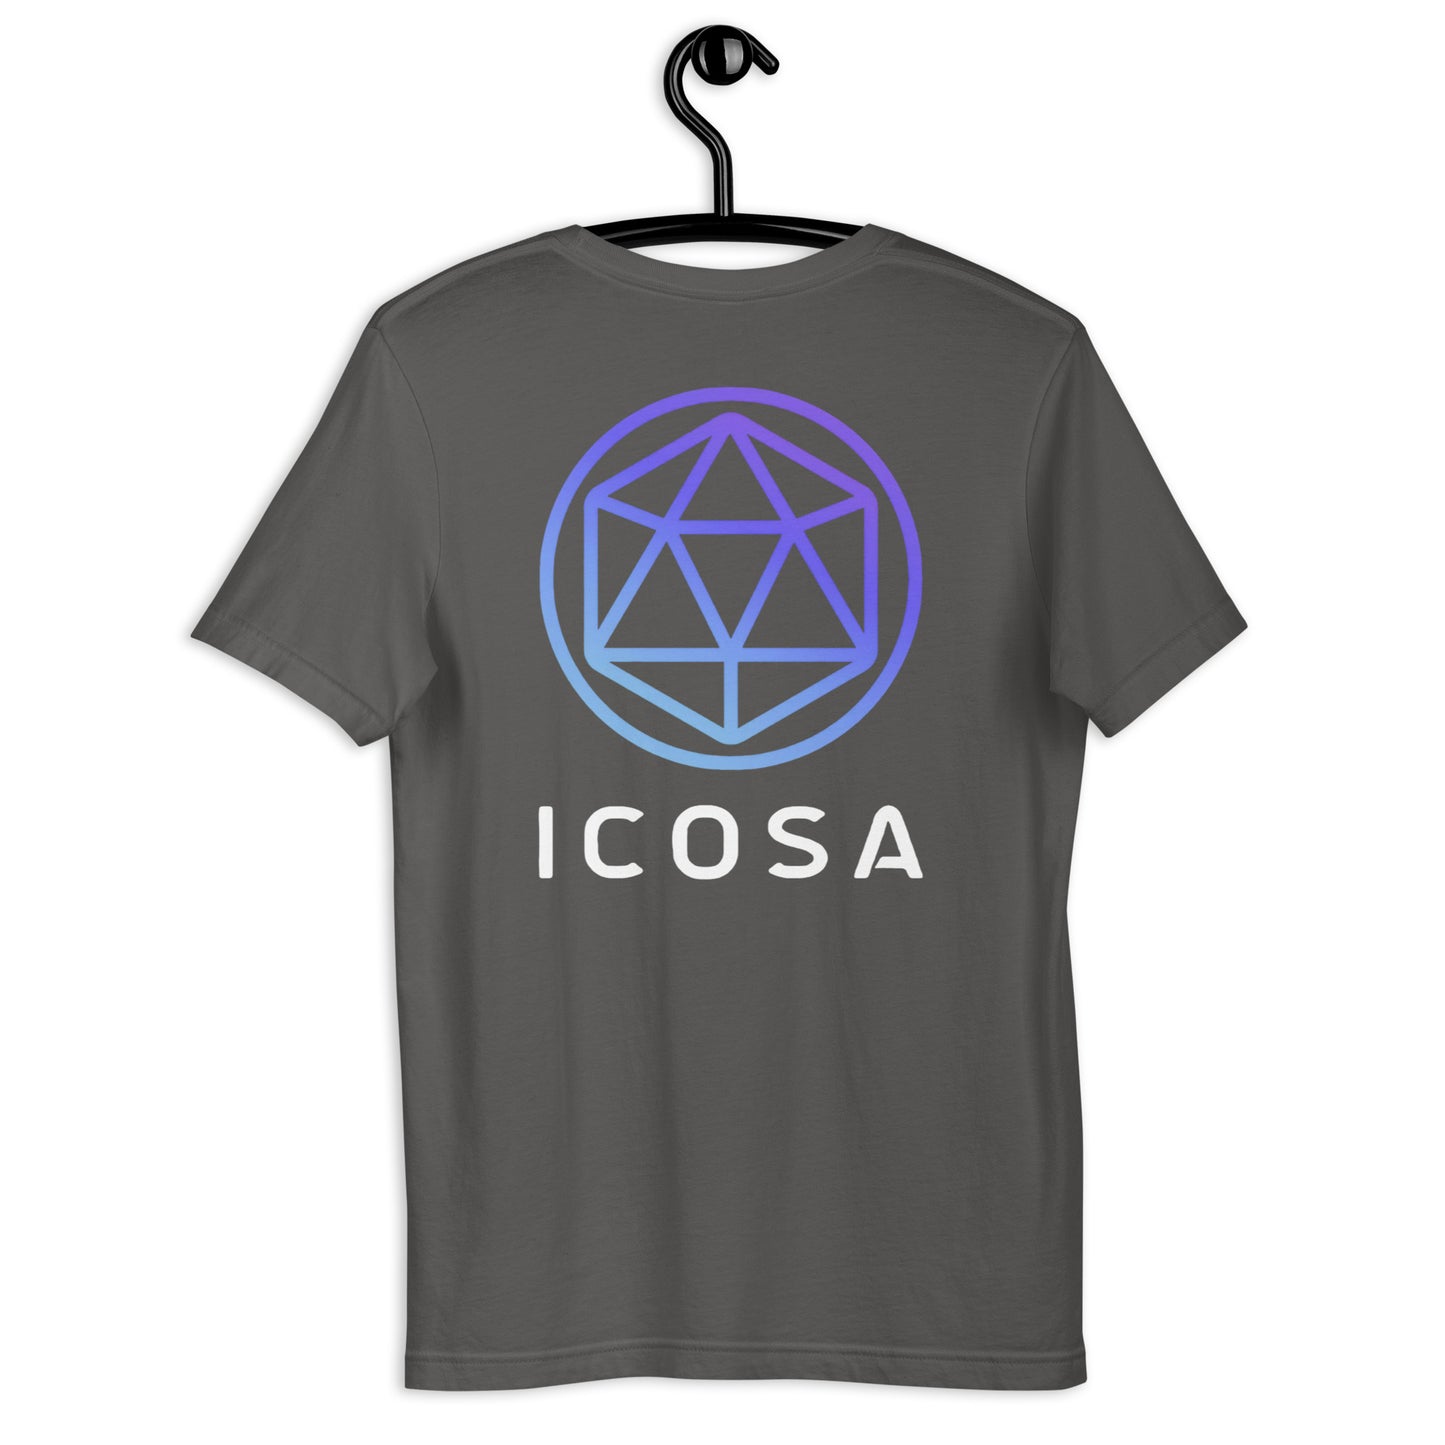 Icosa Unisex T-Shirt (Front & Back)